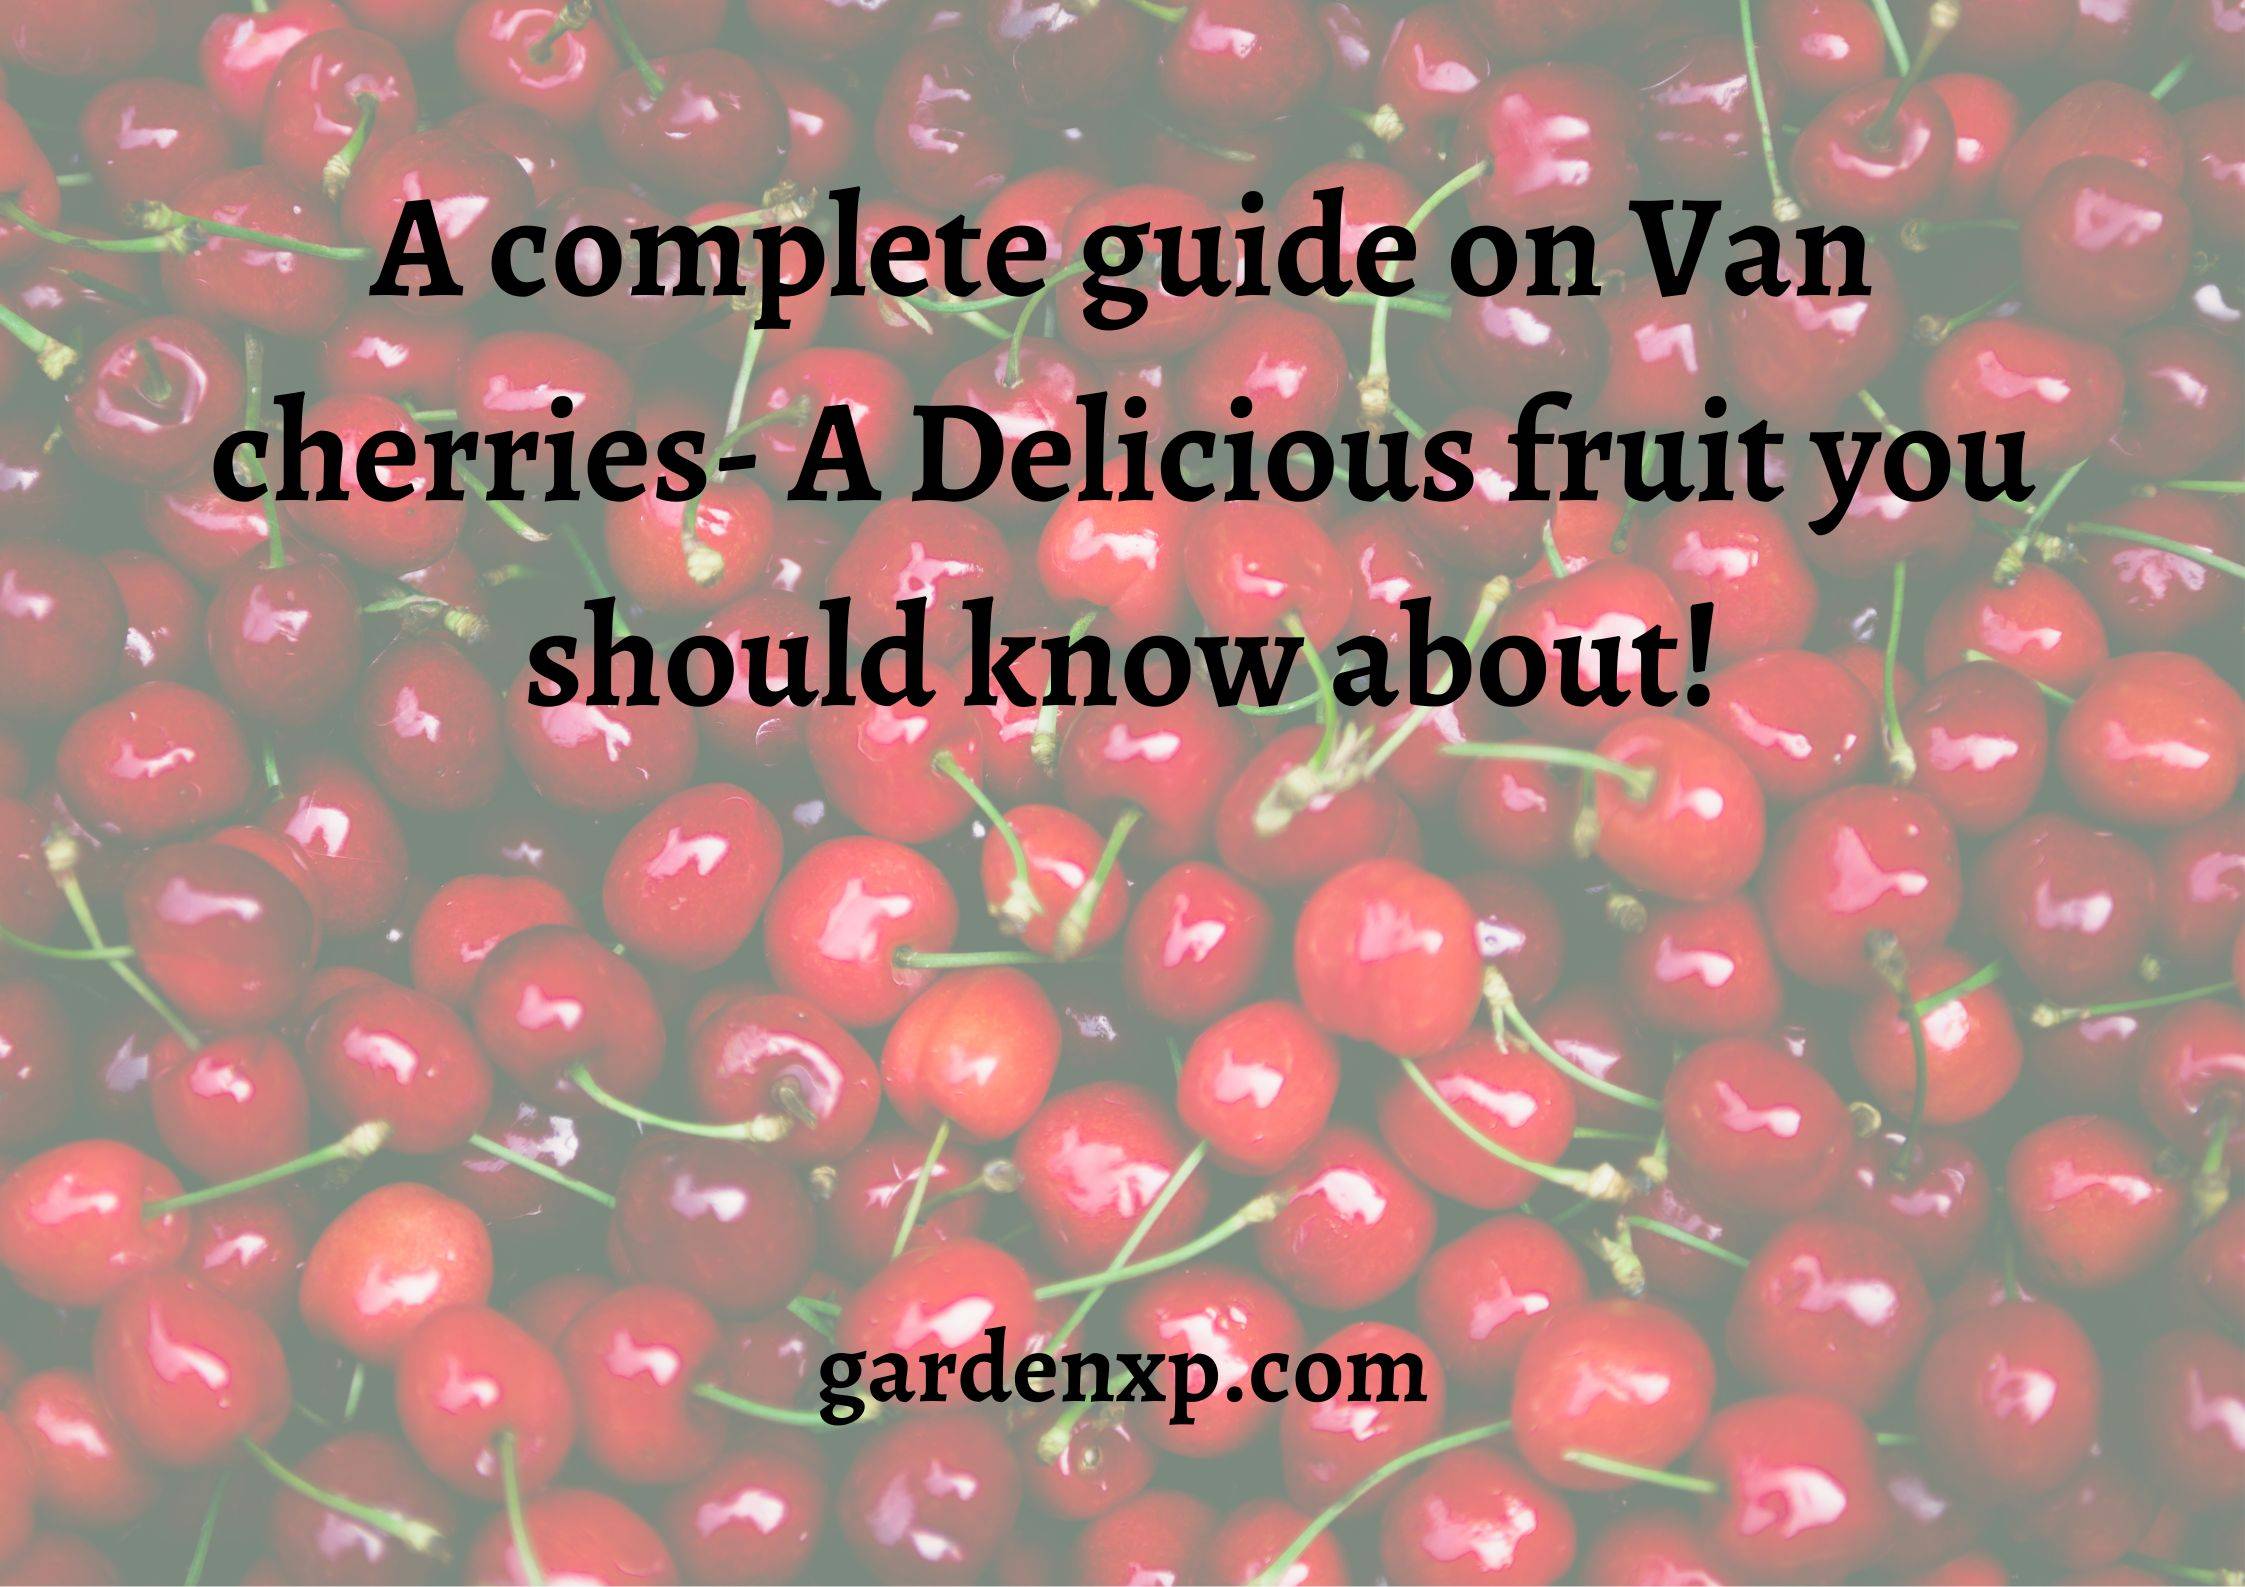 How to grow Van Cherries? - Uses and Growing tips for Van cherries